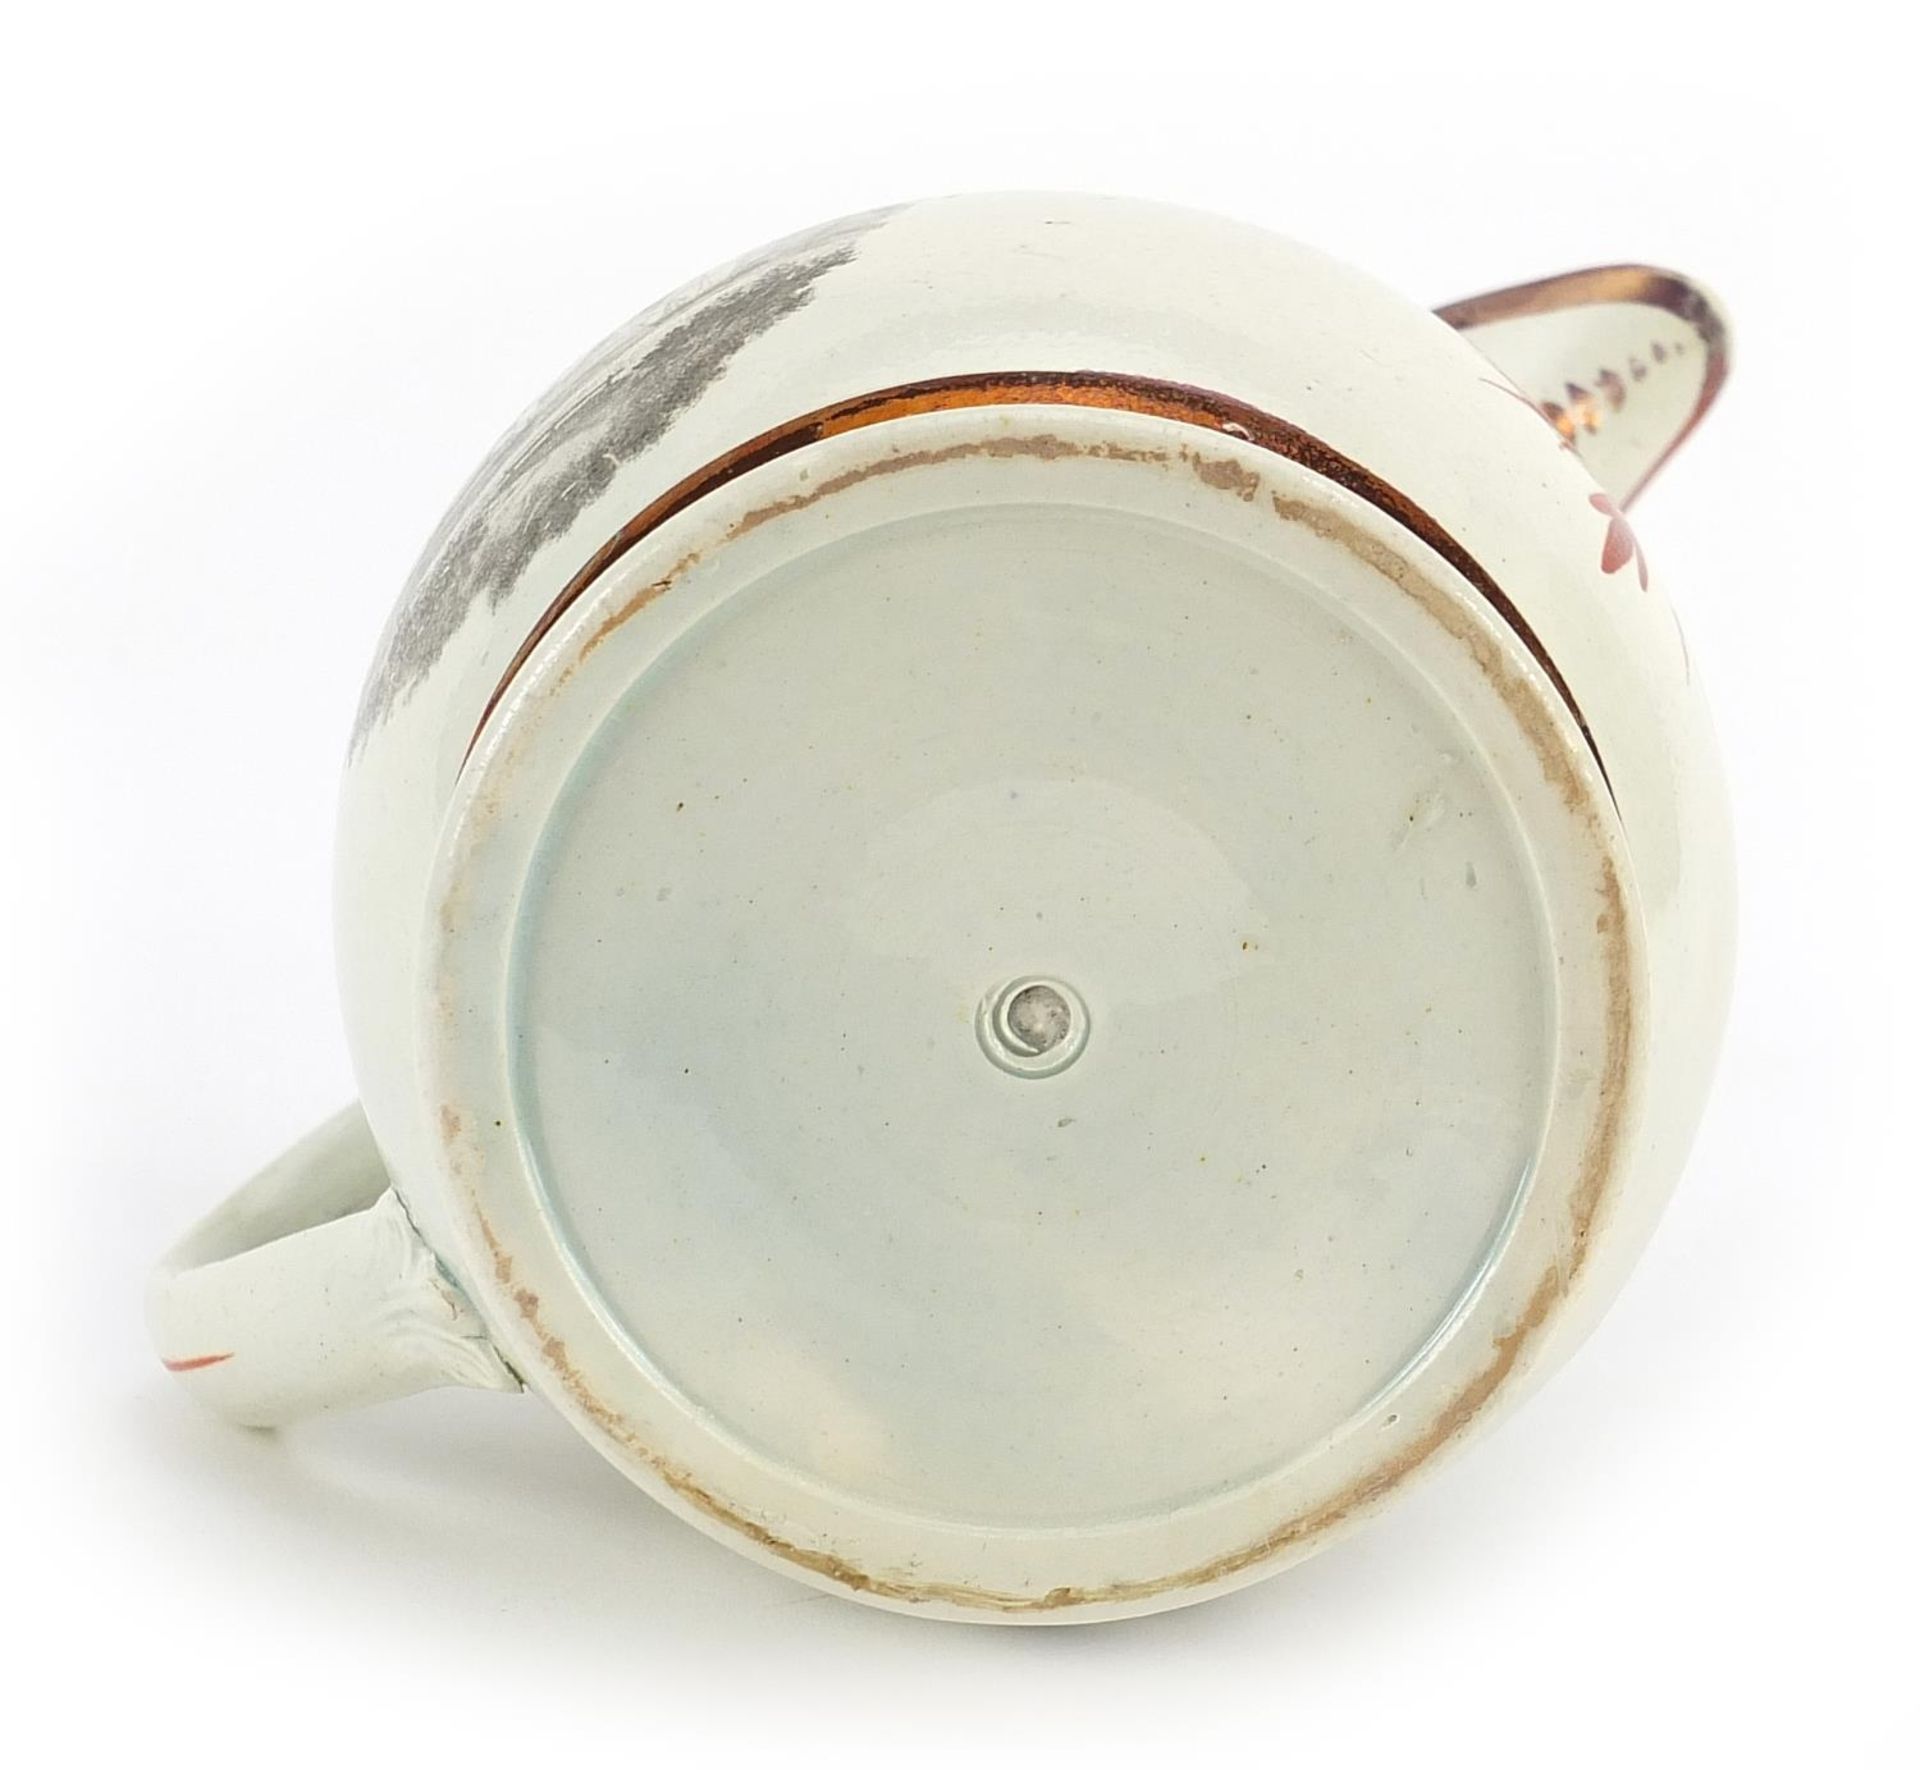 Victorian Sunderland lustre jug commemorating Queen Caroline, 12cm high - Image 3 of 3